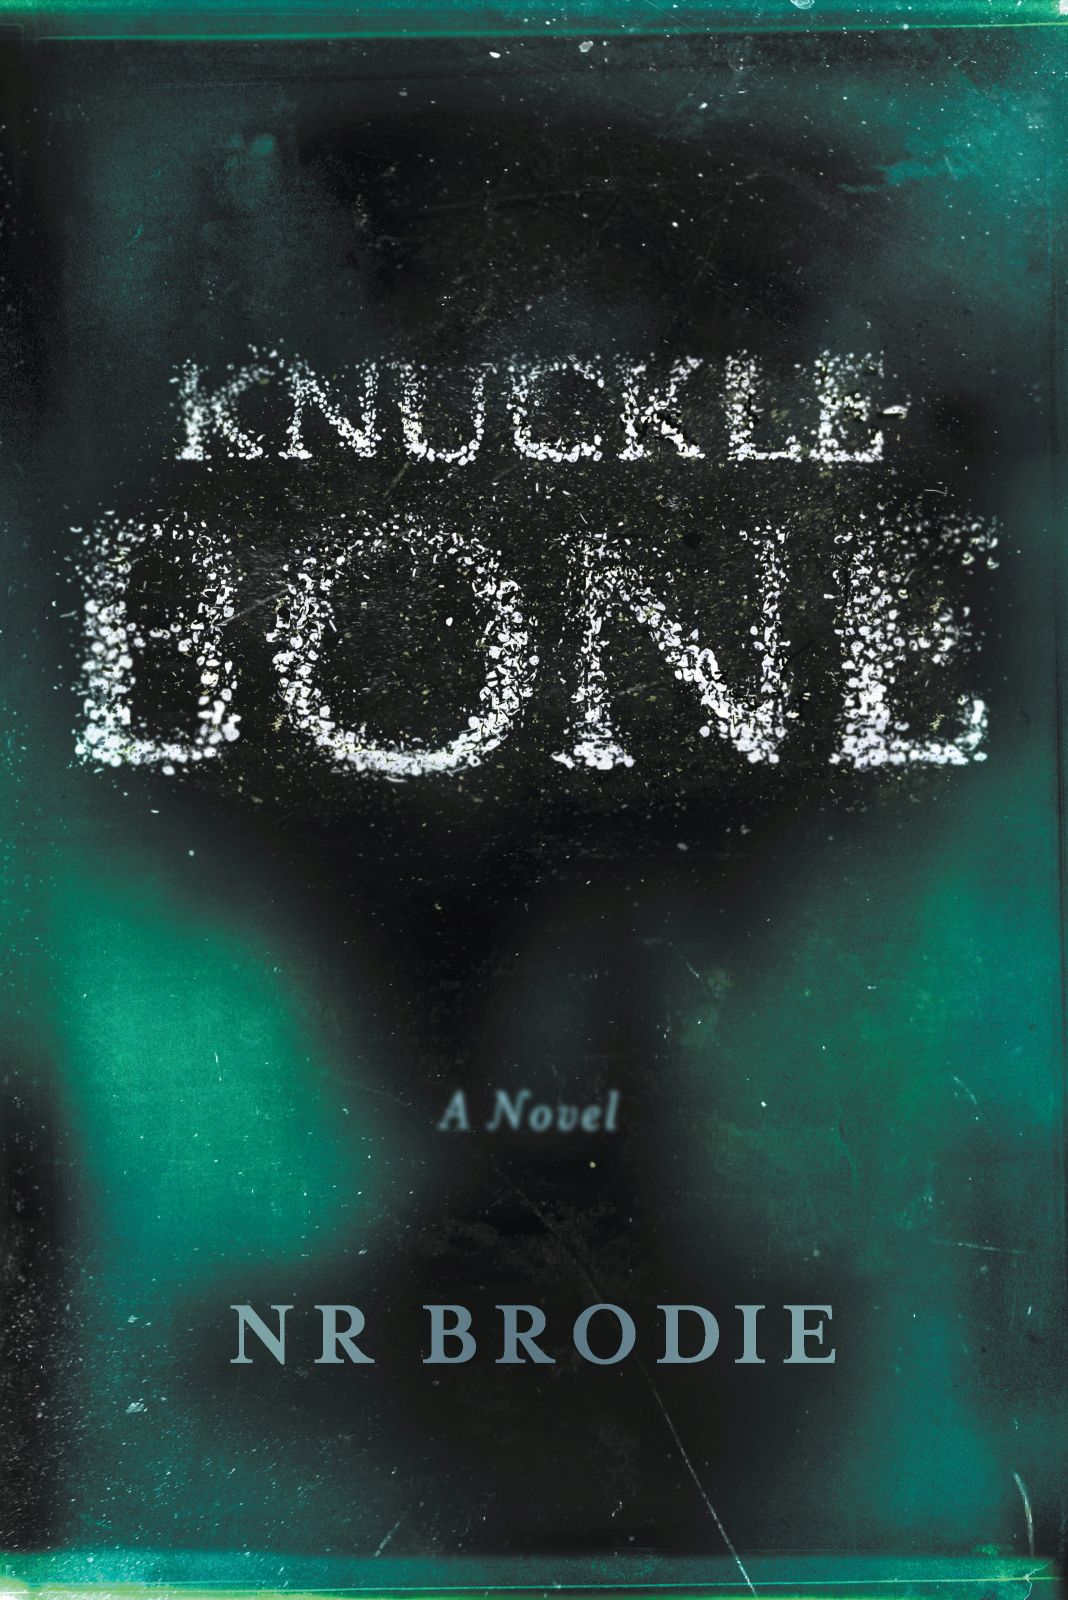 Knucklebone: A novel, by N R Brodie